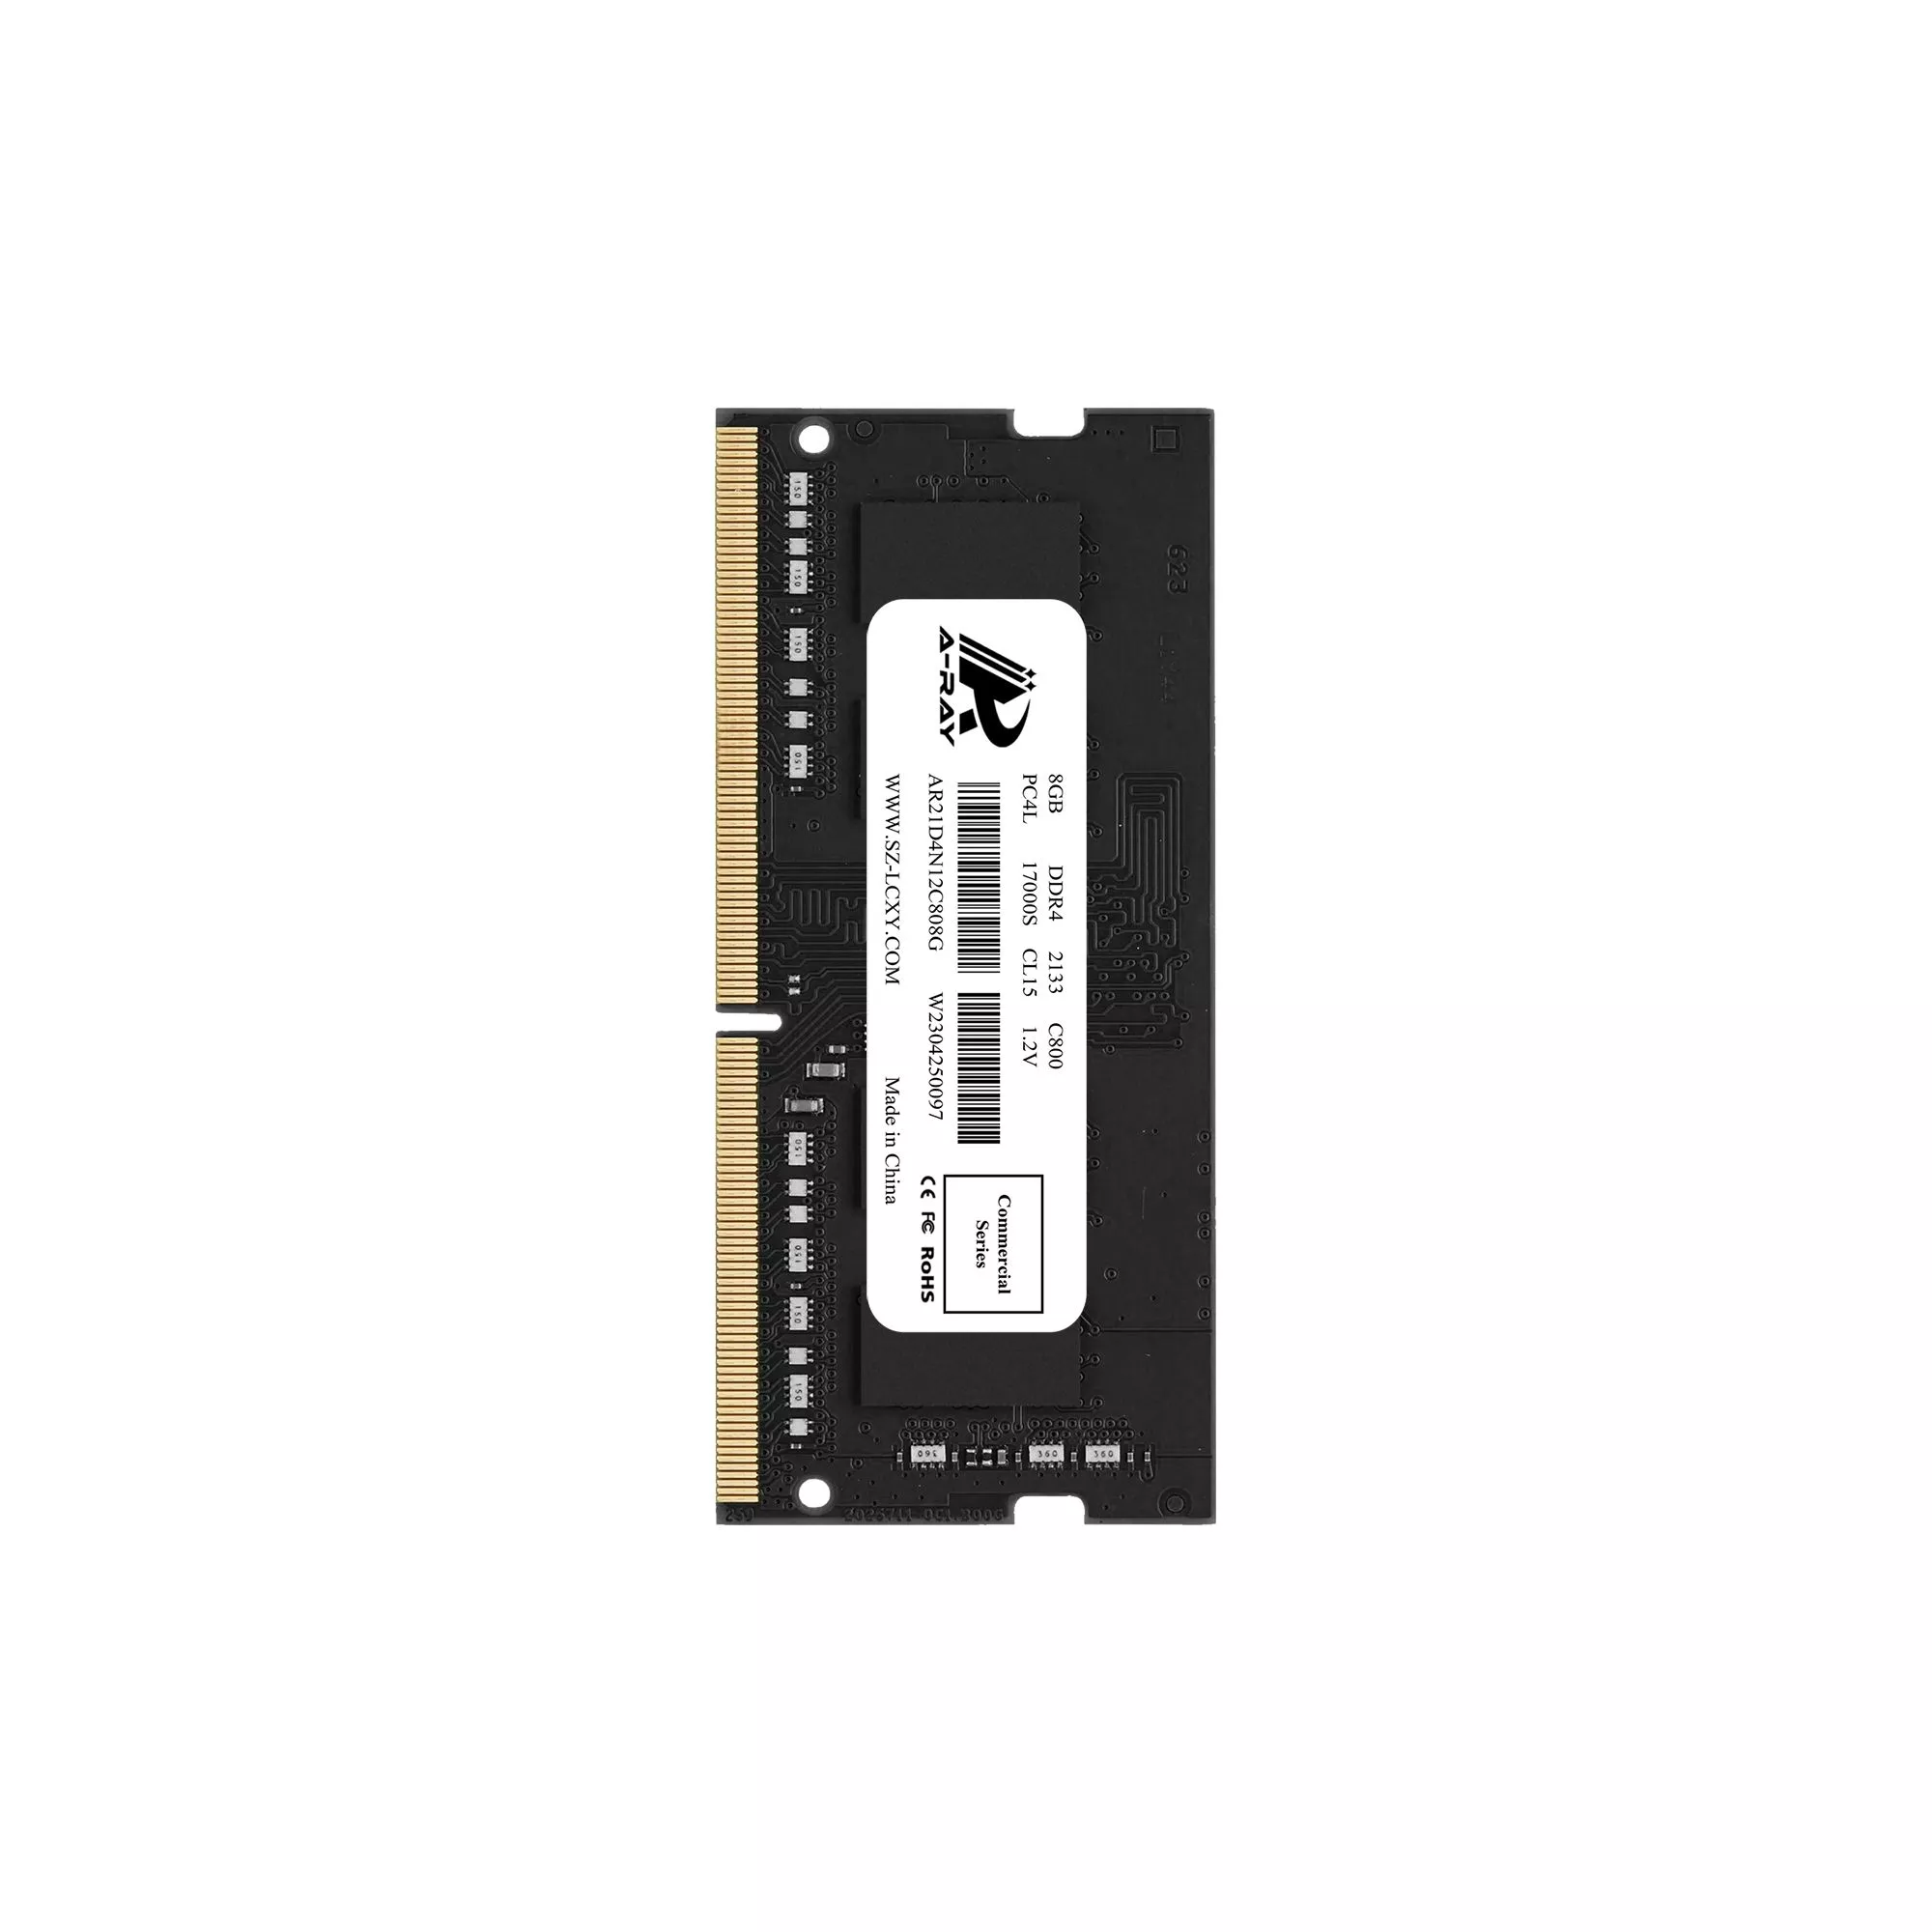 Bộ nhớ trong Ram A-Ray 8GB DDR4 Bus 2133 Mhz Laptop C800 17000 MB/s P/N: AR21D4N12C808G